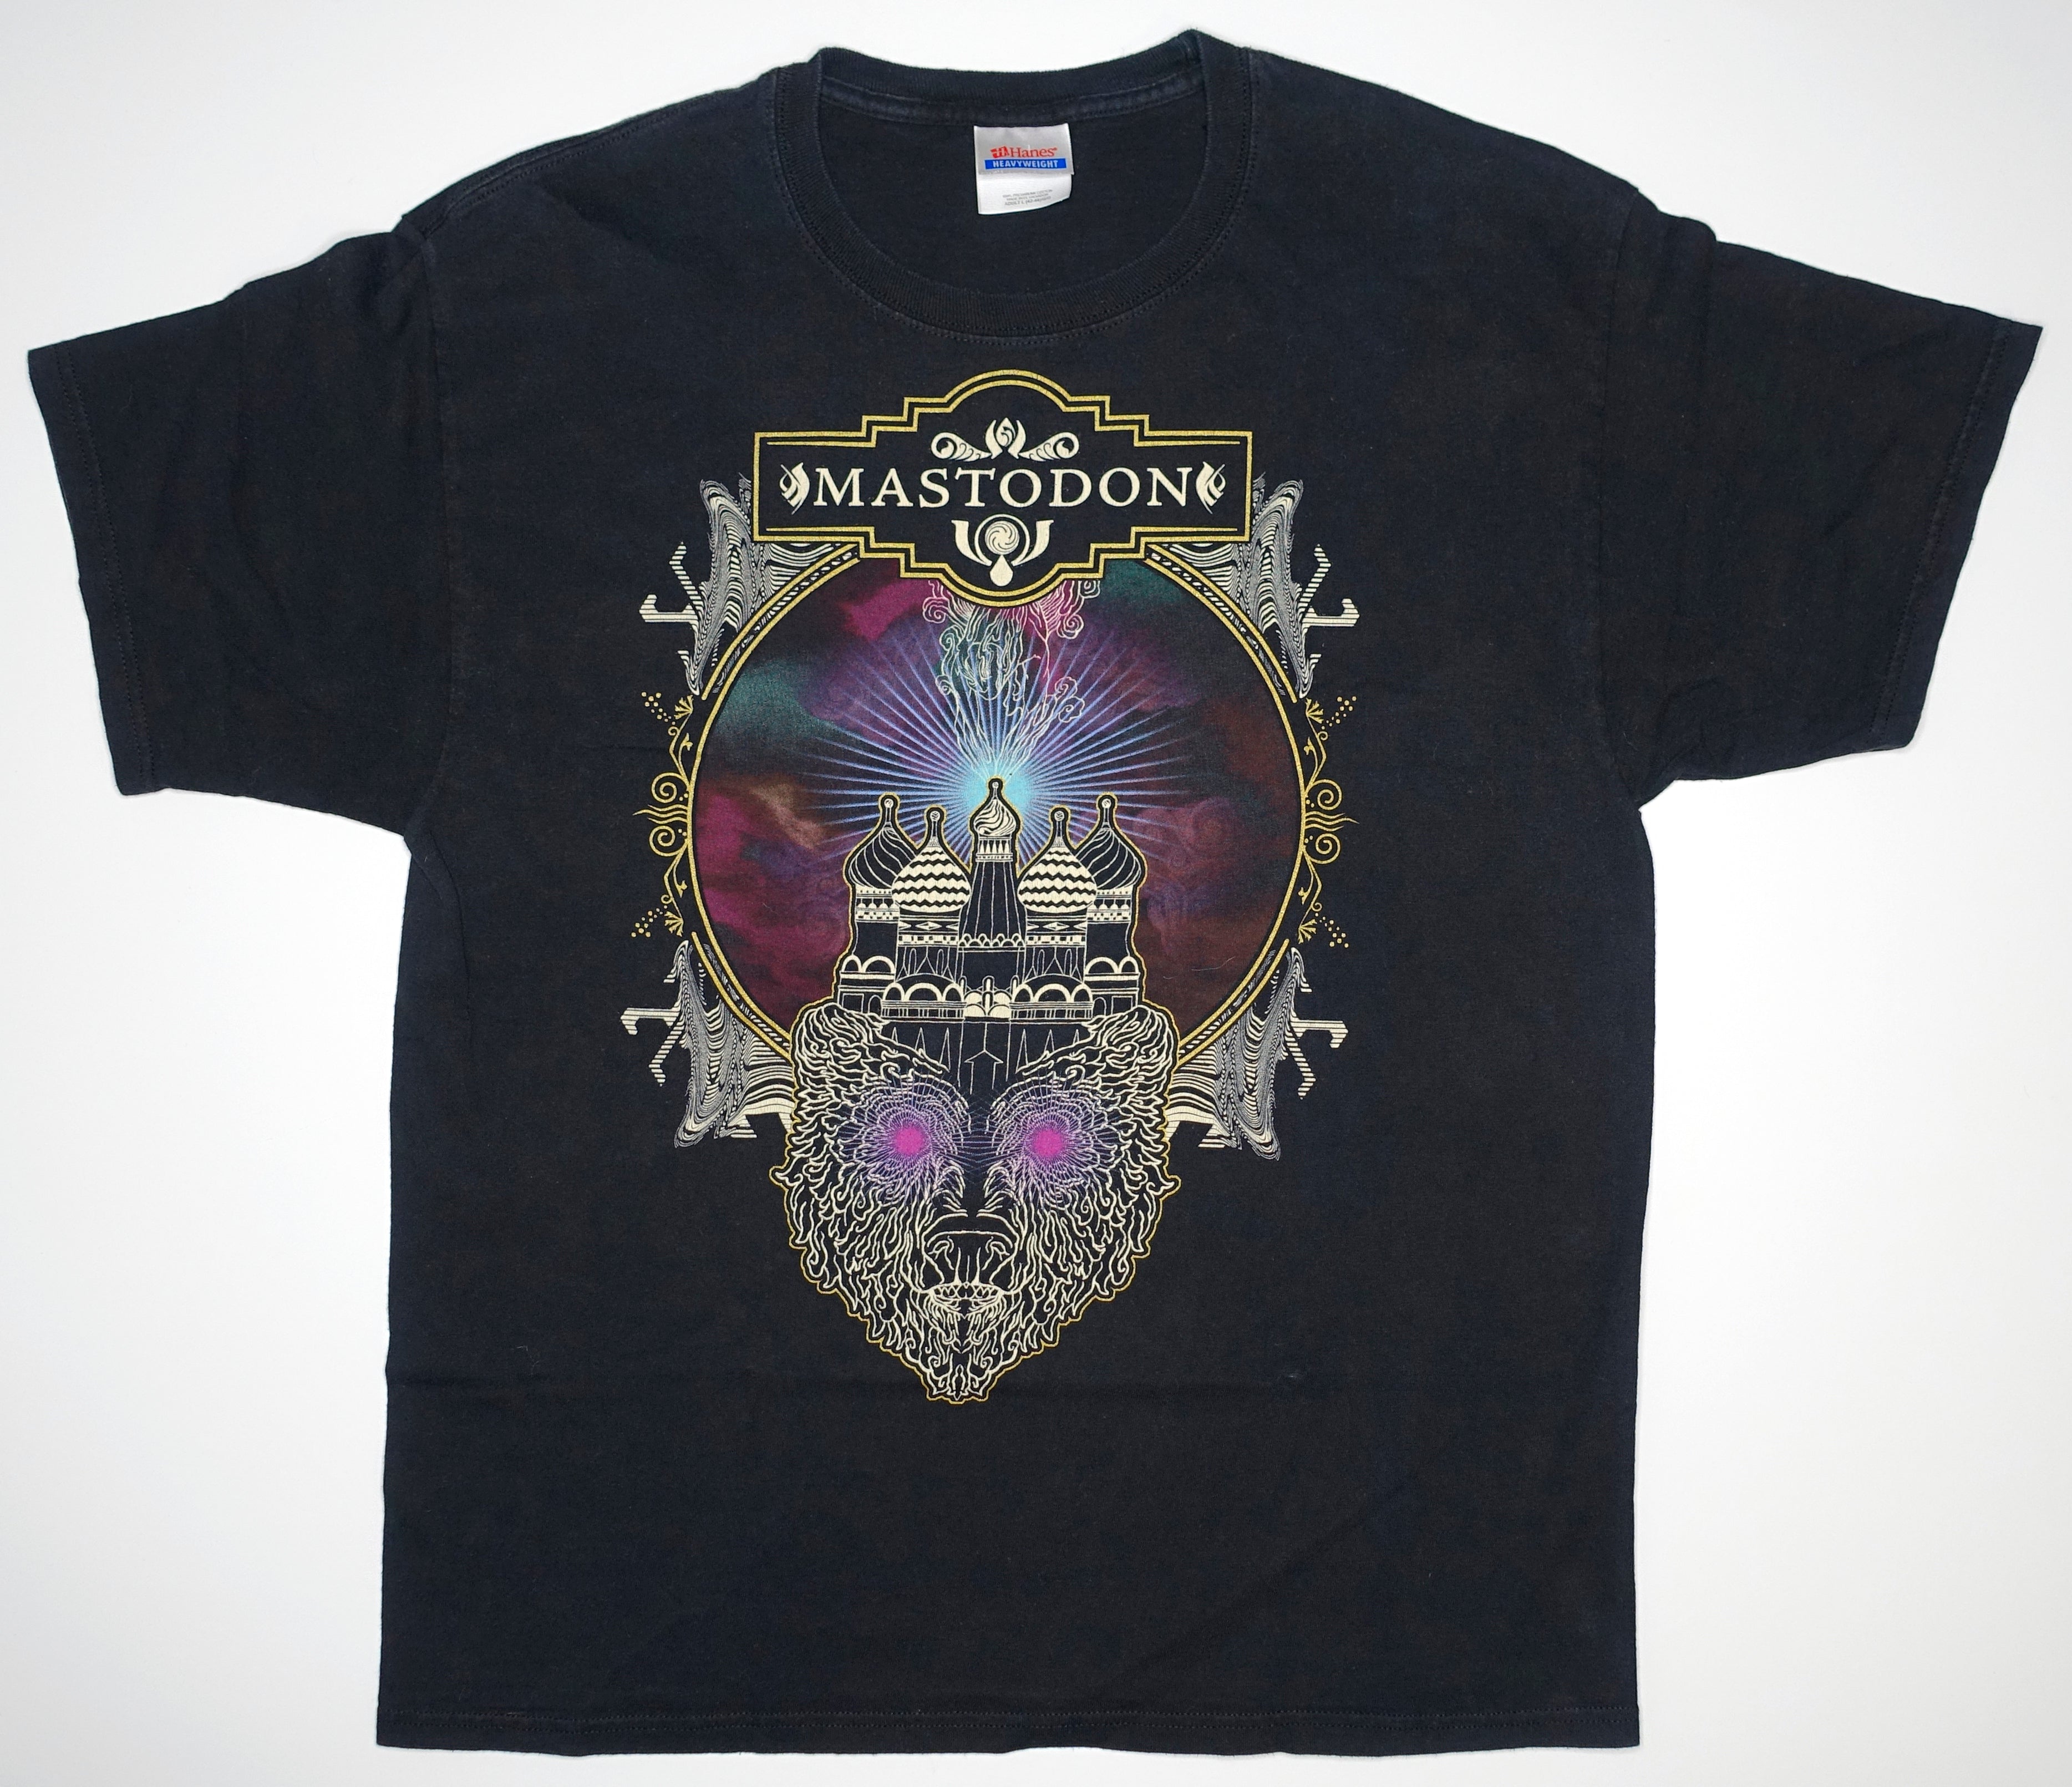 Mastodon - Crack The Skye 2008 Tour Shirt Size Large